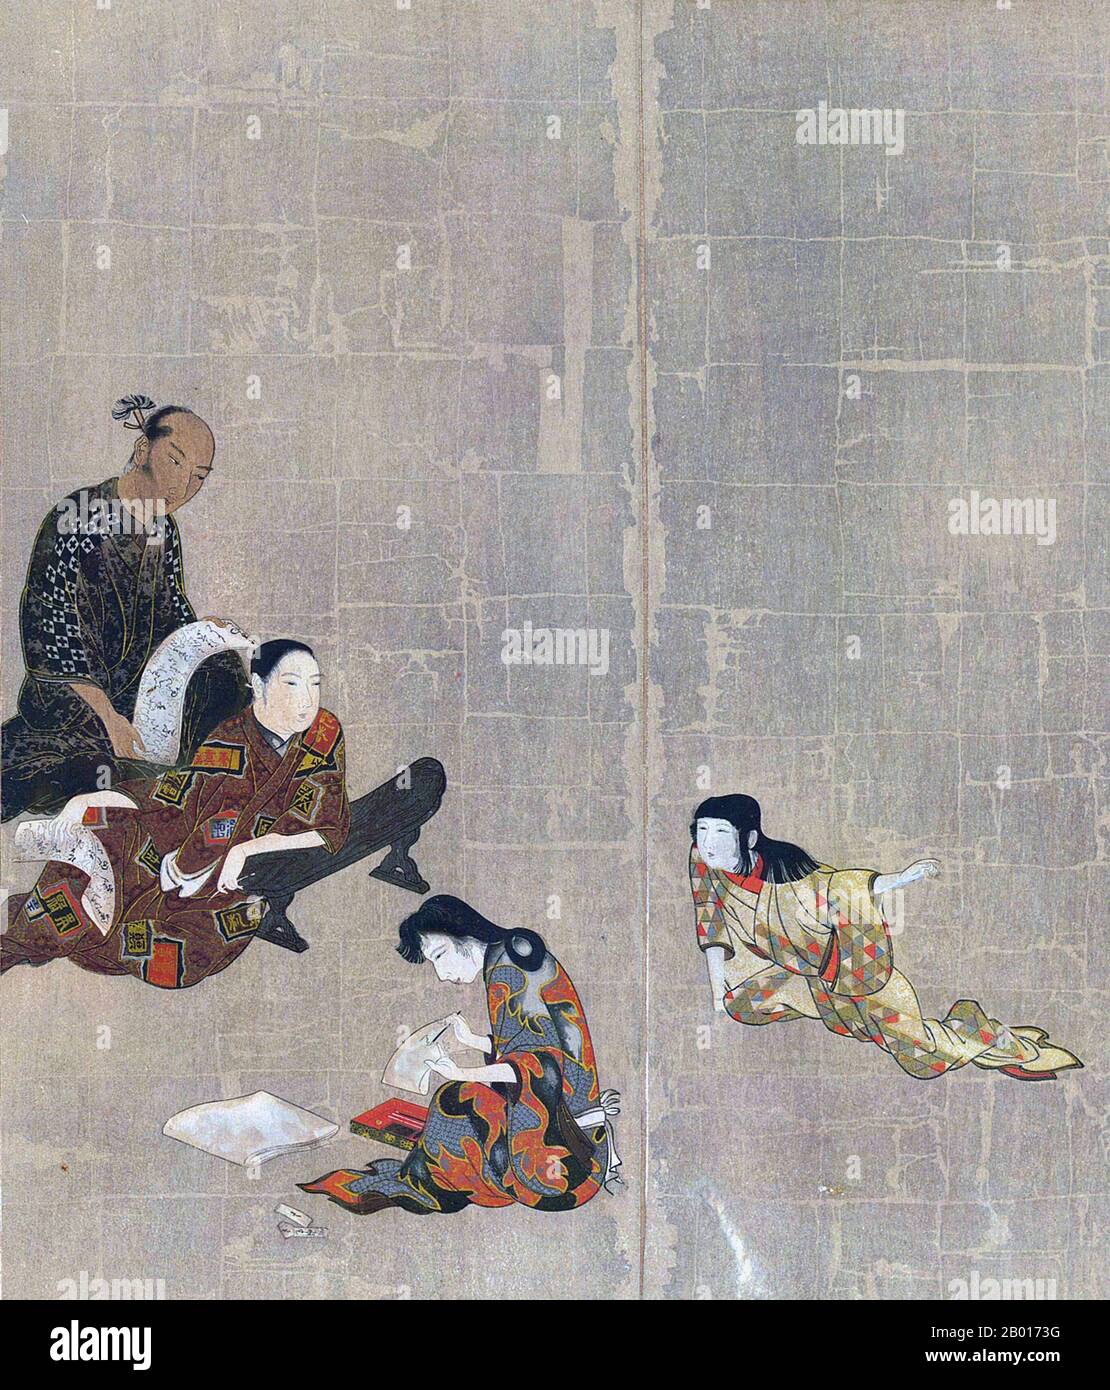 Japon: Section de l'écran Hikone, un byobu écran pliant, c.1624-1644.L'écran Hikone était un écran de pliage de byobo de l'ère de Ka'ei (c.1624-1644) de la période Edo.Peint sur papier feuille d'or et pliable en six parties, l'écran représente les quartiers de plaisir de Kyoto, avec des personnes jouant de la musique et des jeux.C'est un représentant de la peinture de genre japonaise moderne tôt, et vu par certains comme la première ukiyo-e art.Il a été désigné Trésor national en 1955. Banque D'Images